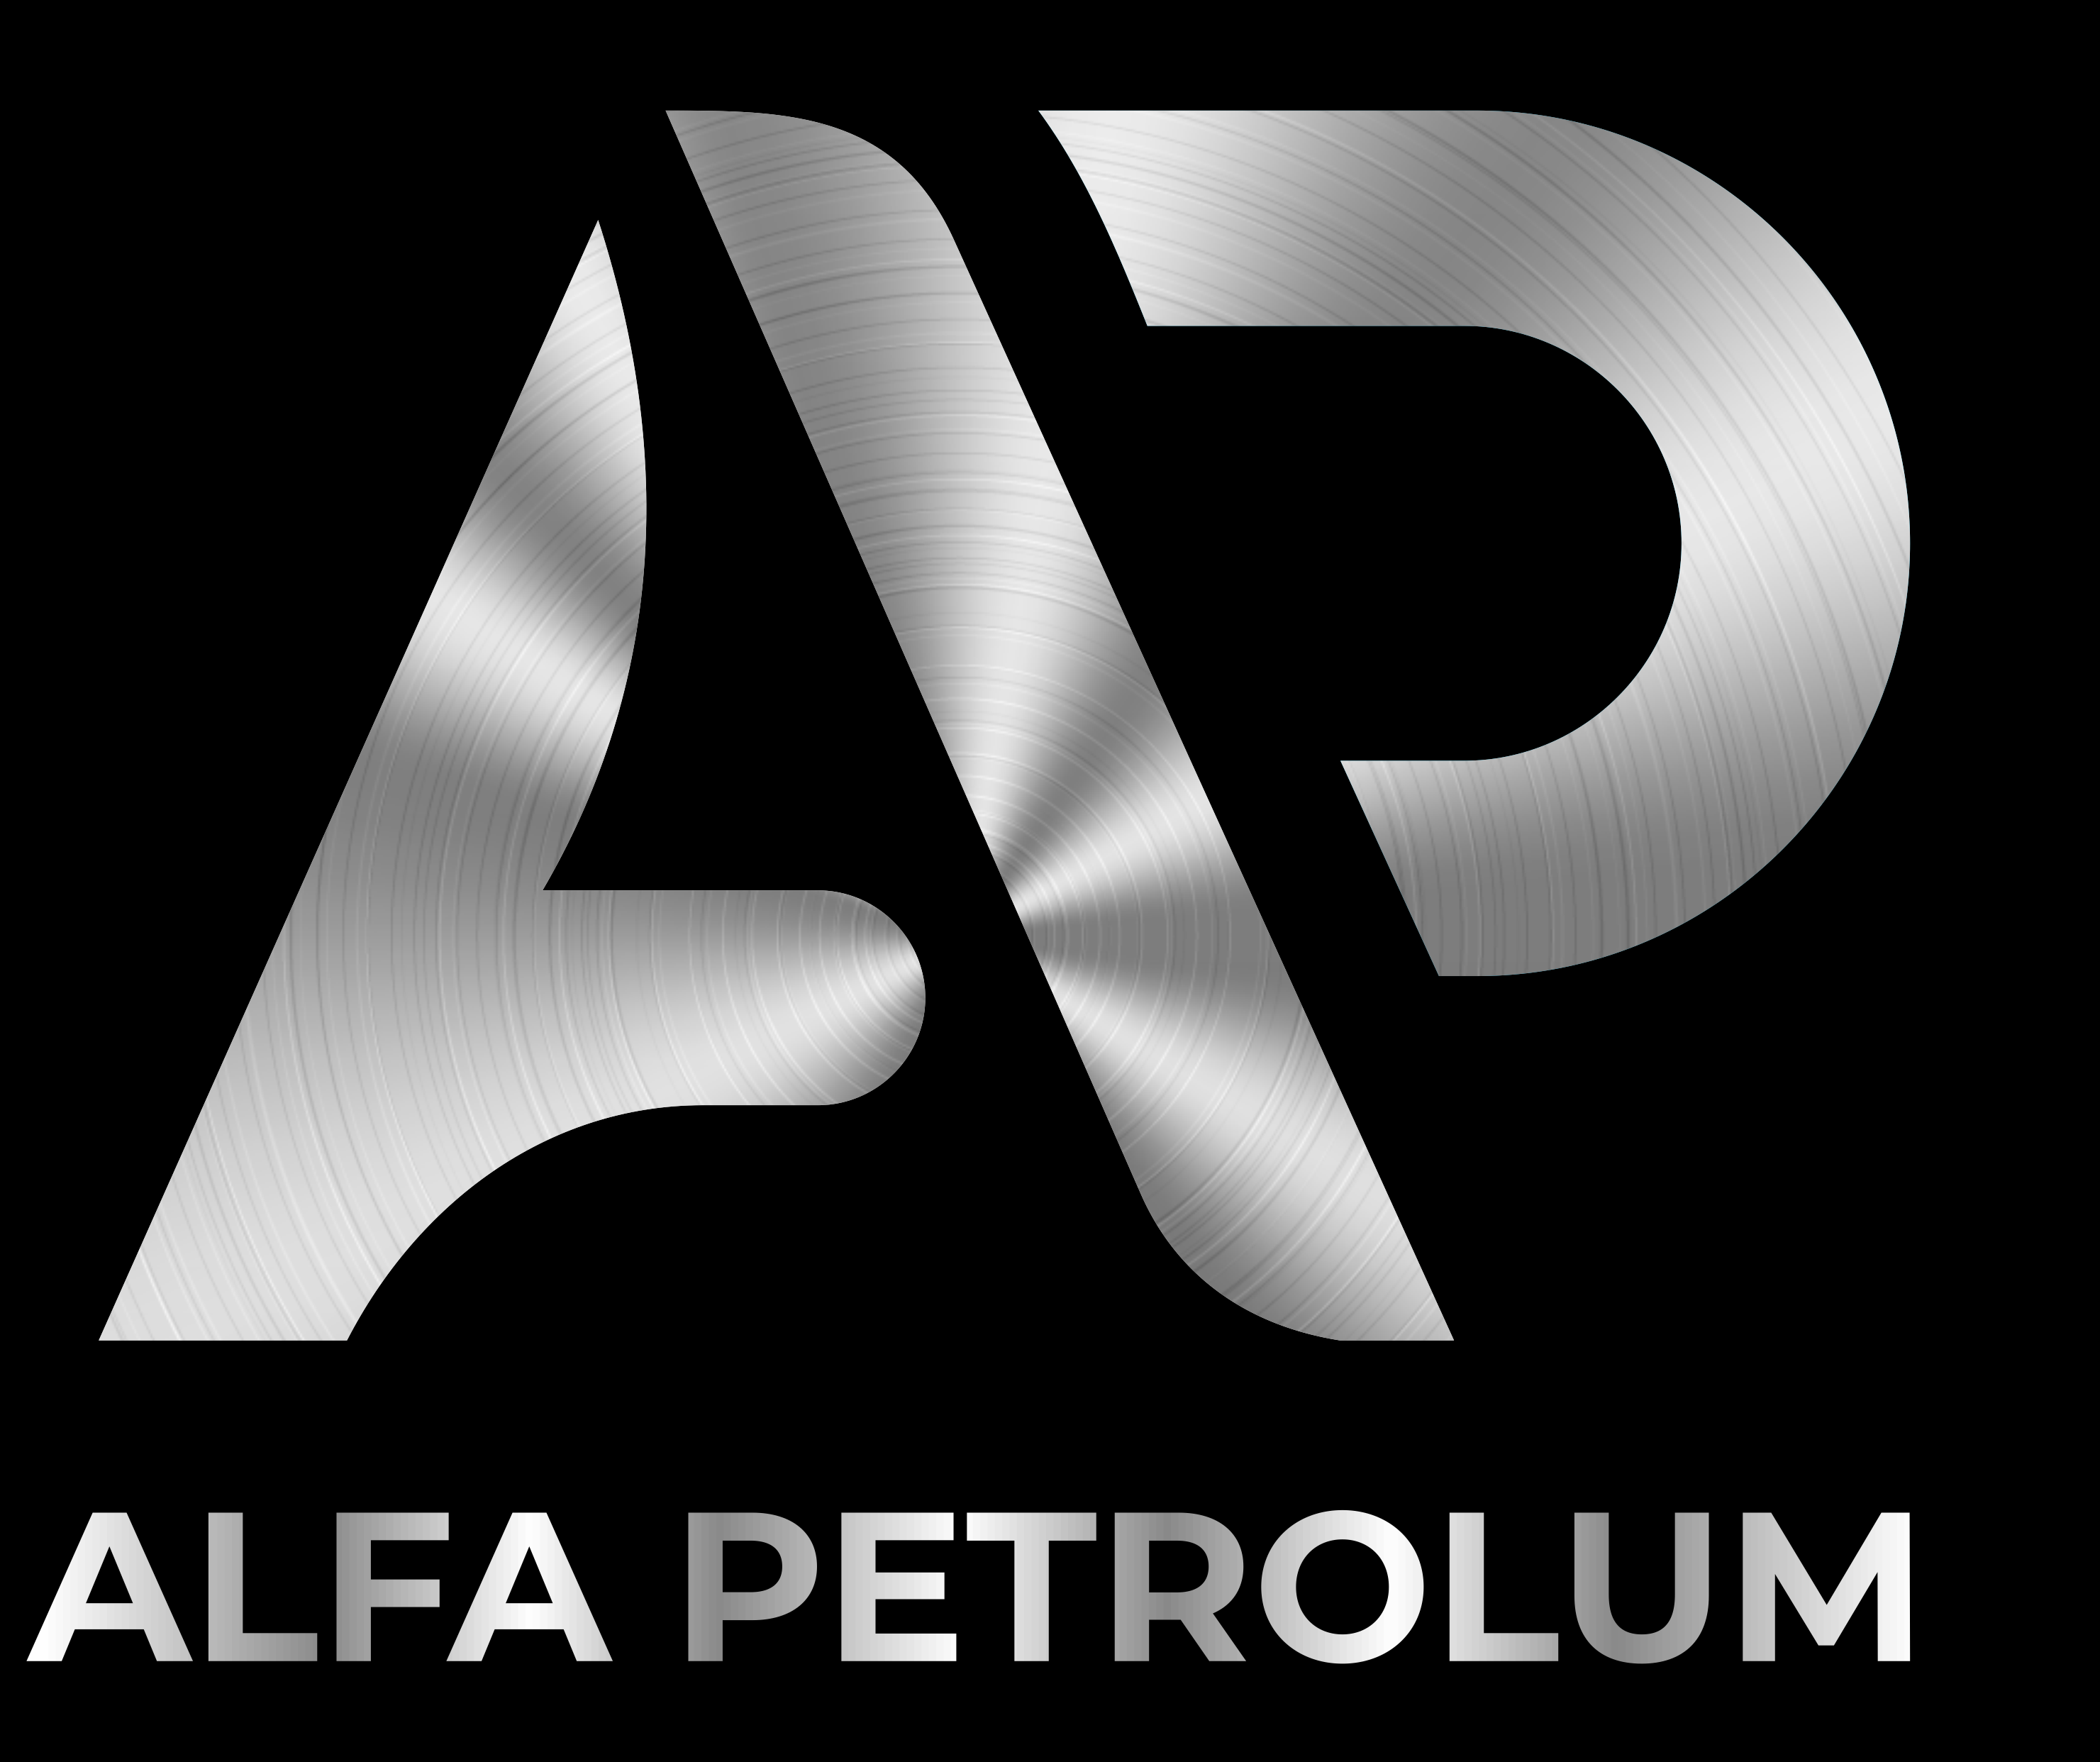 Alfa Petroleum